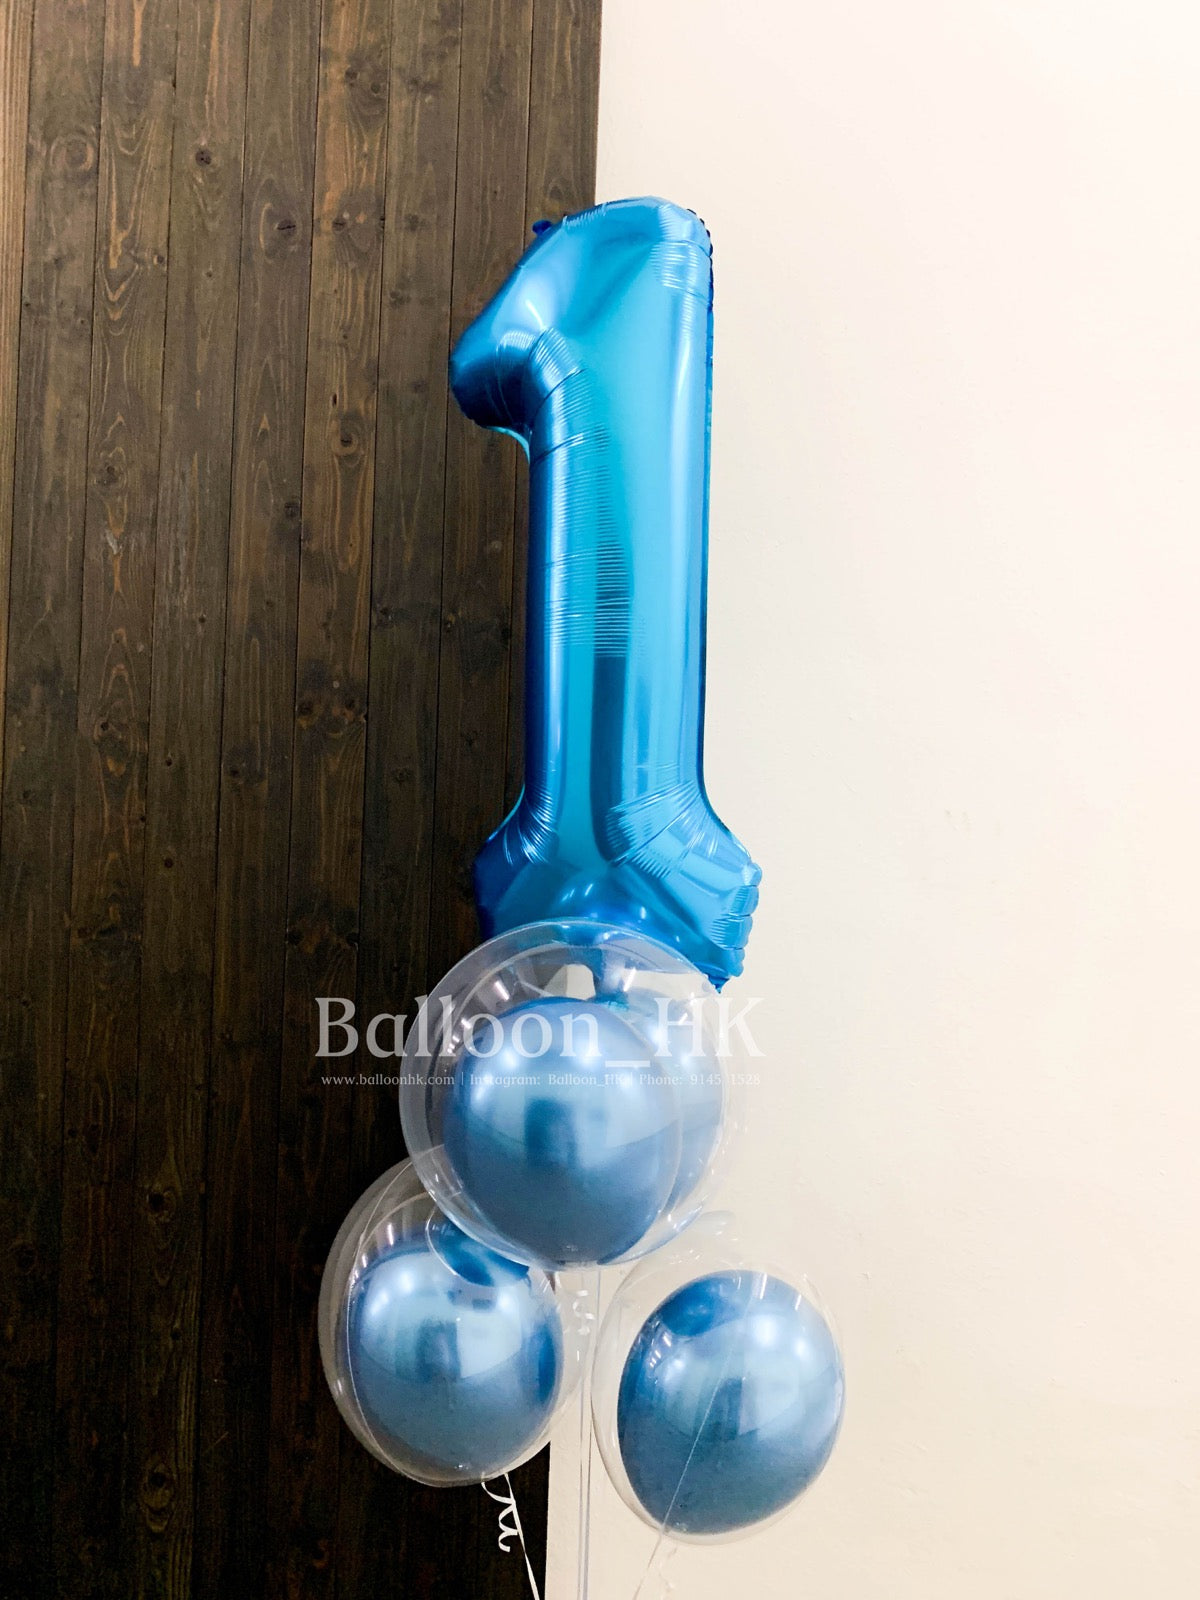 Baby氣球束 12